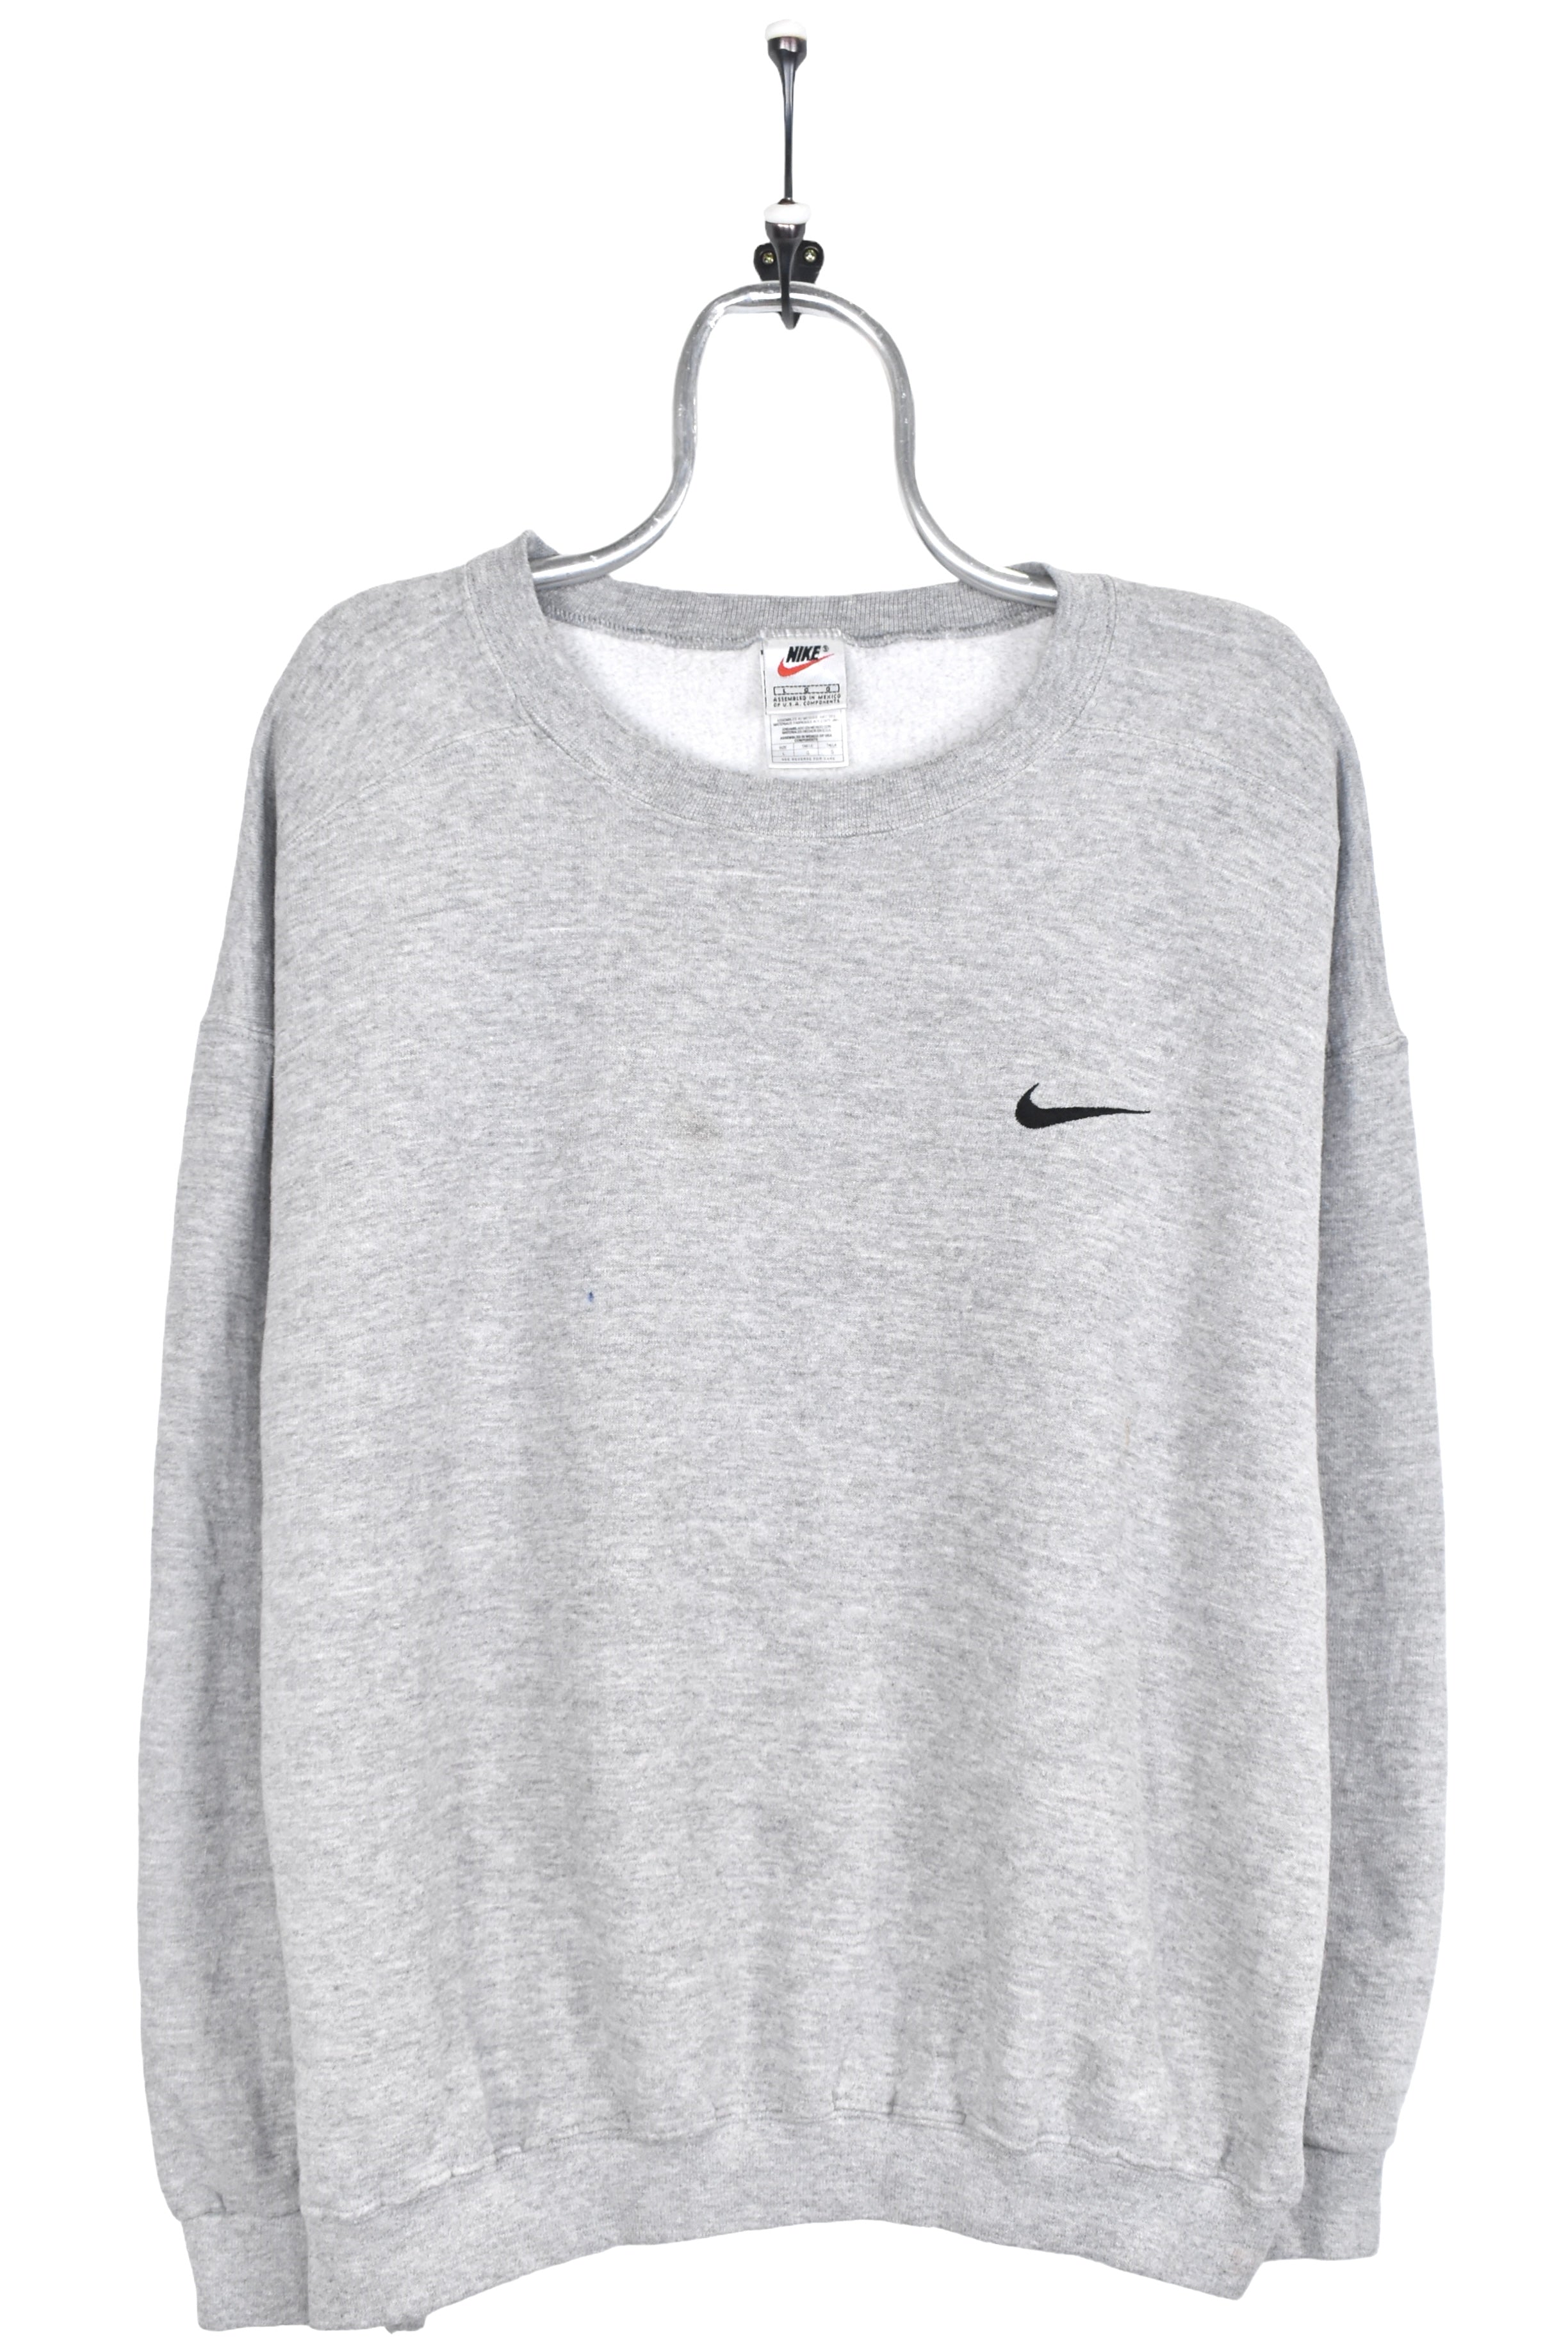 Vintage Nike sweatshirt, grey embroidered crewneck - AU Large